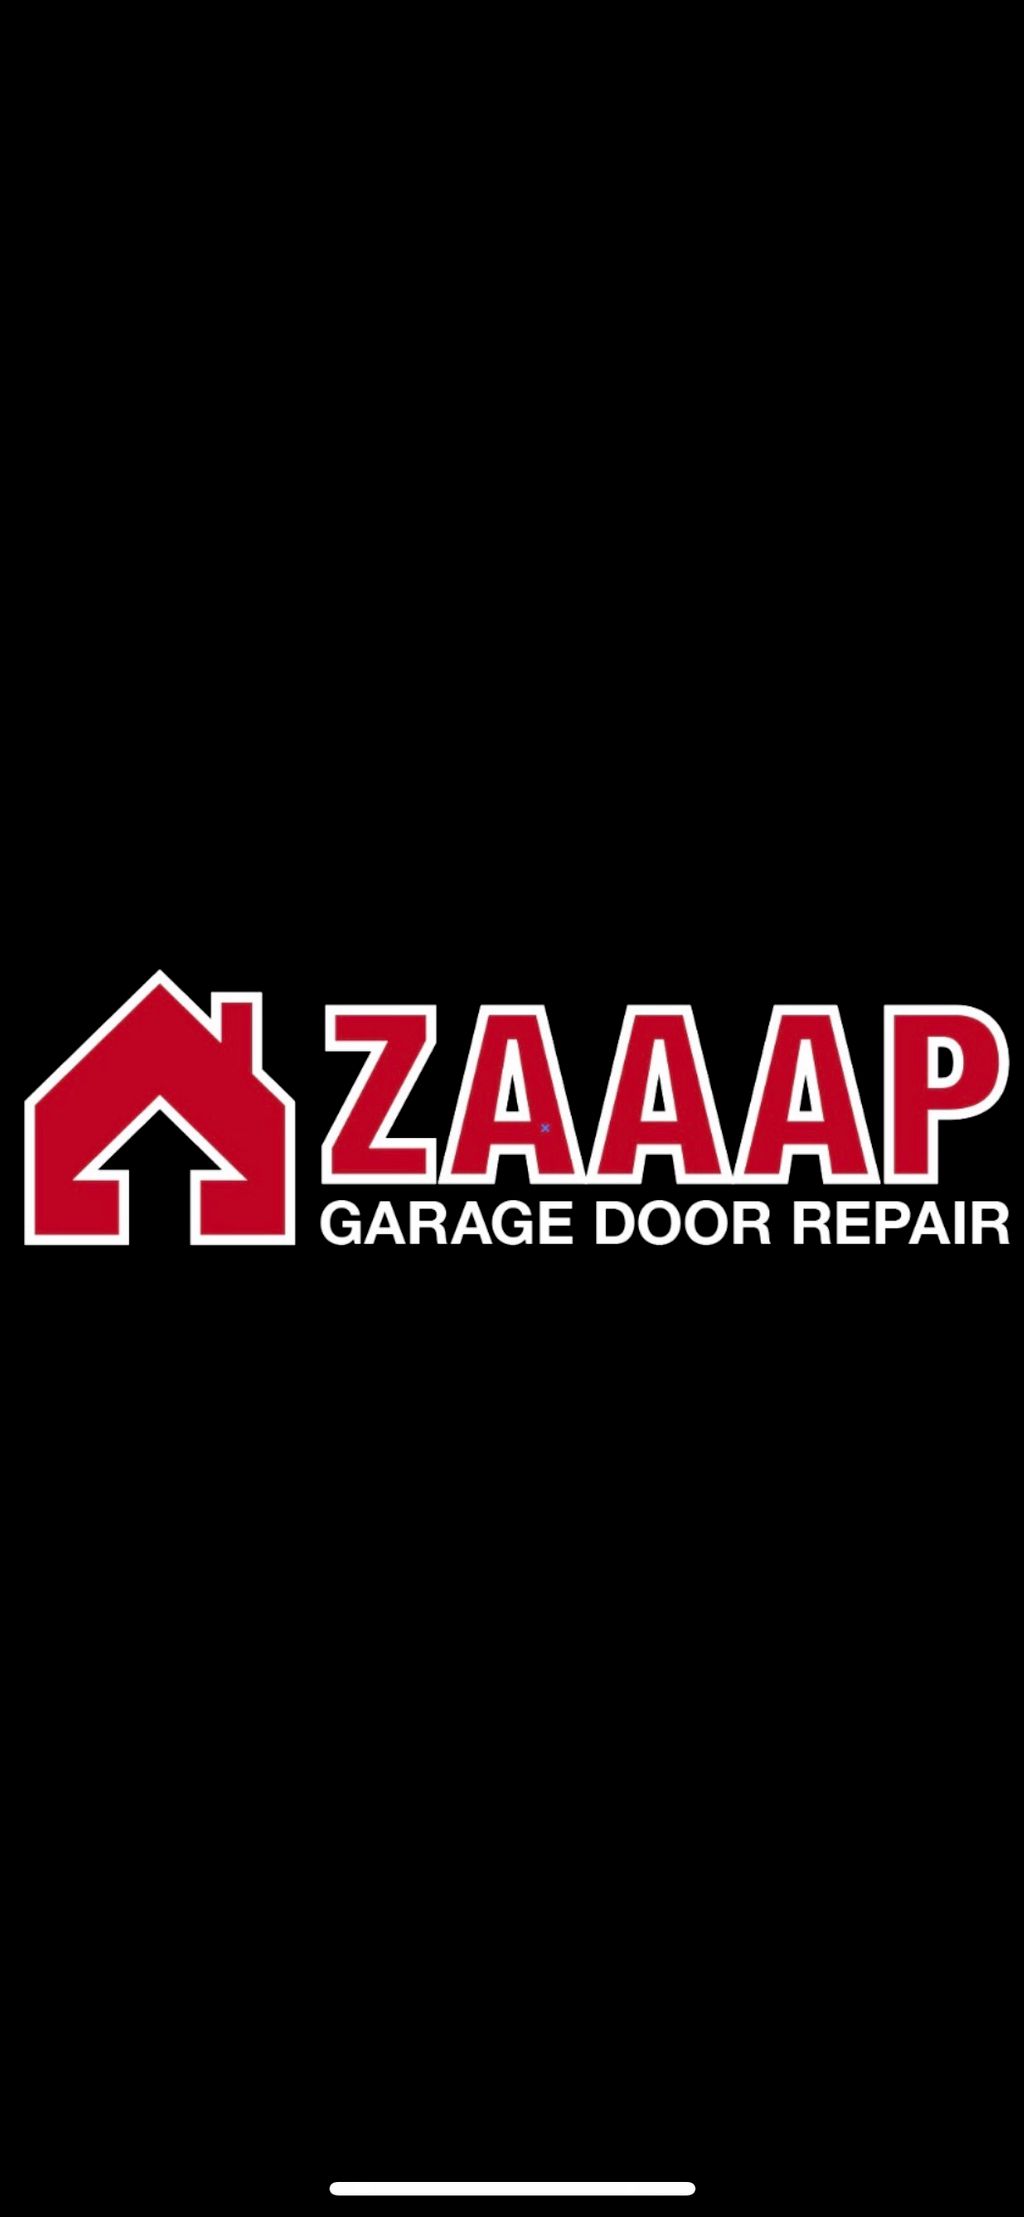 ZAAAP Garage Door Repair